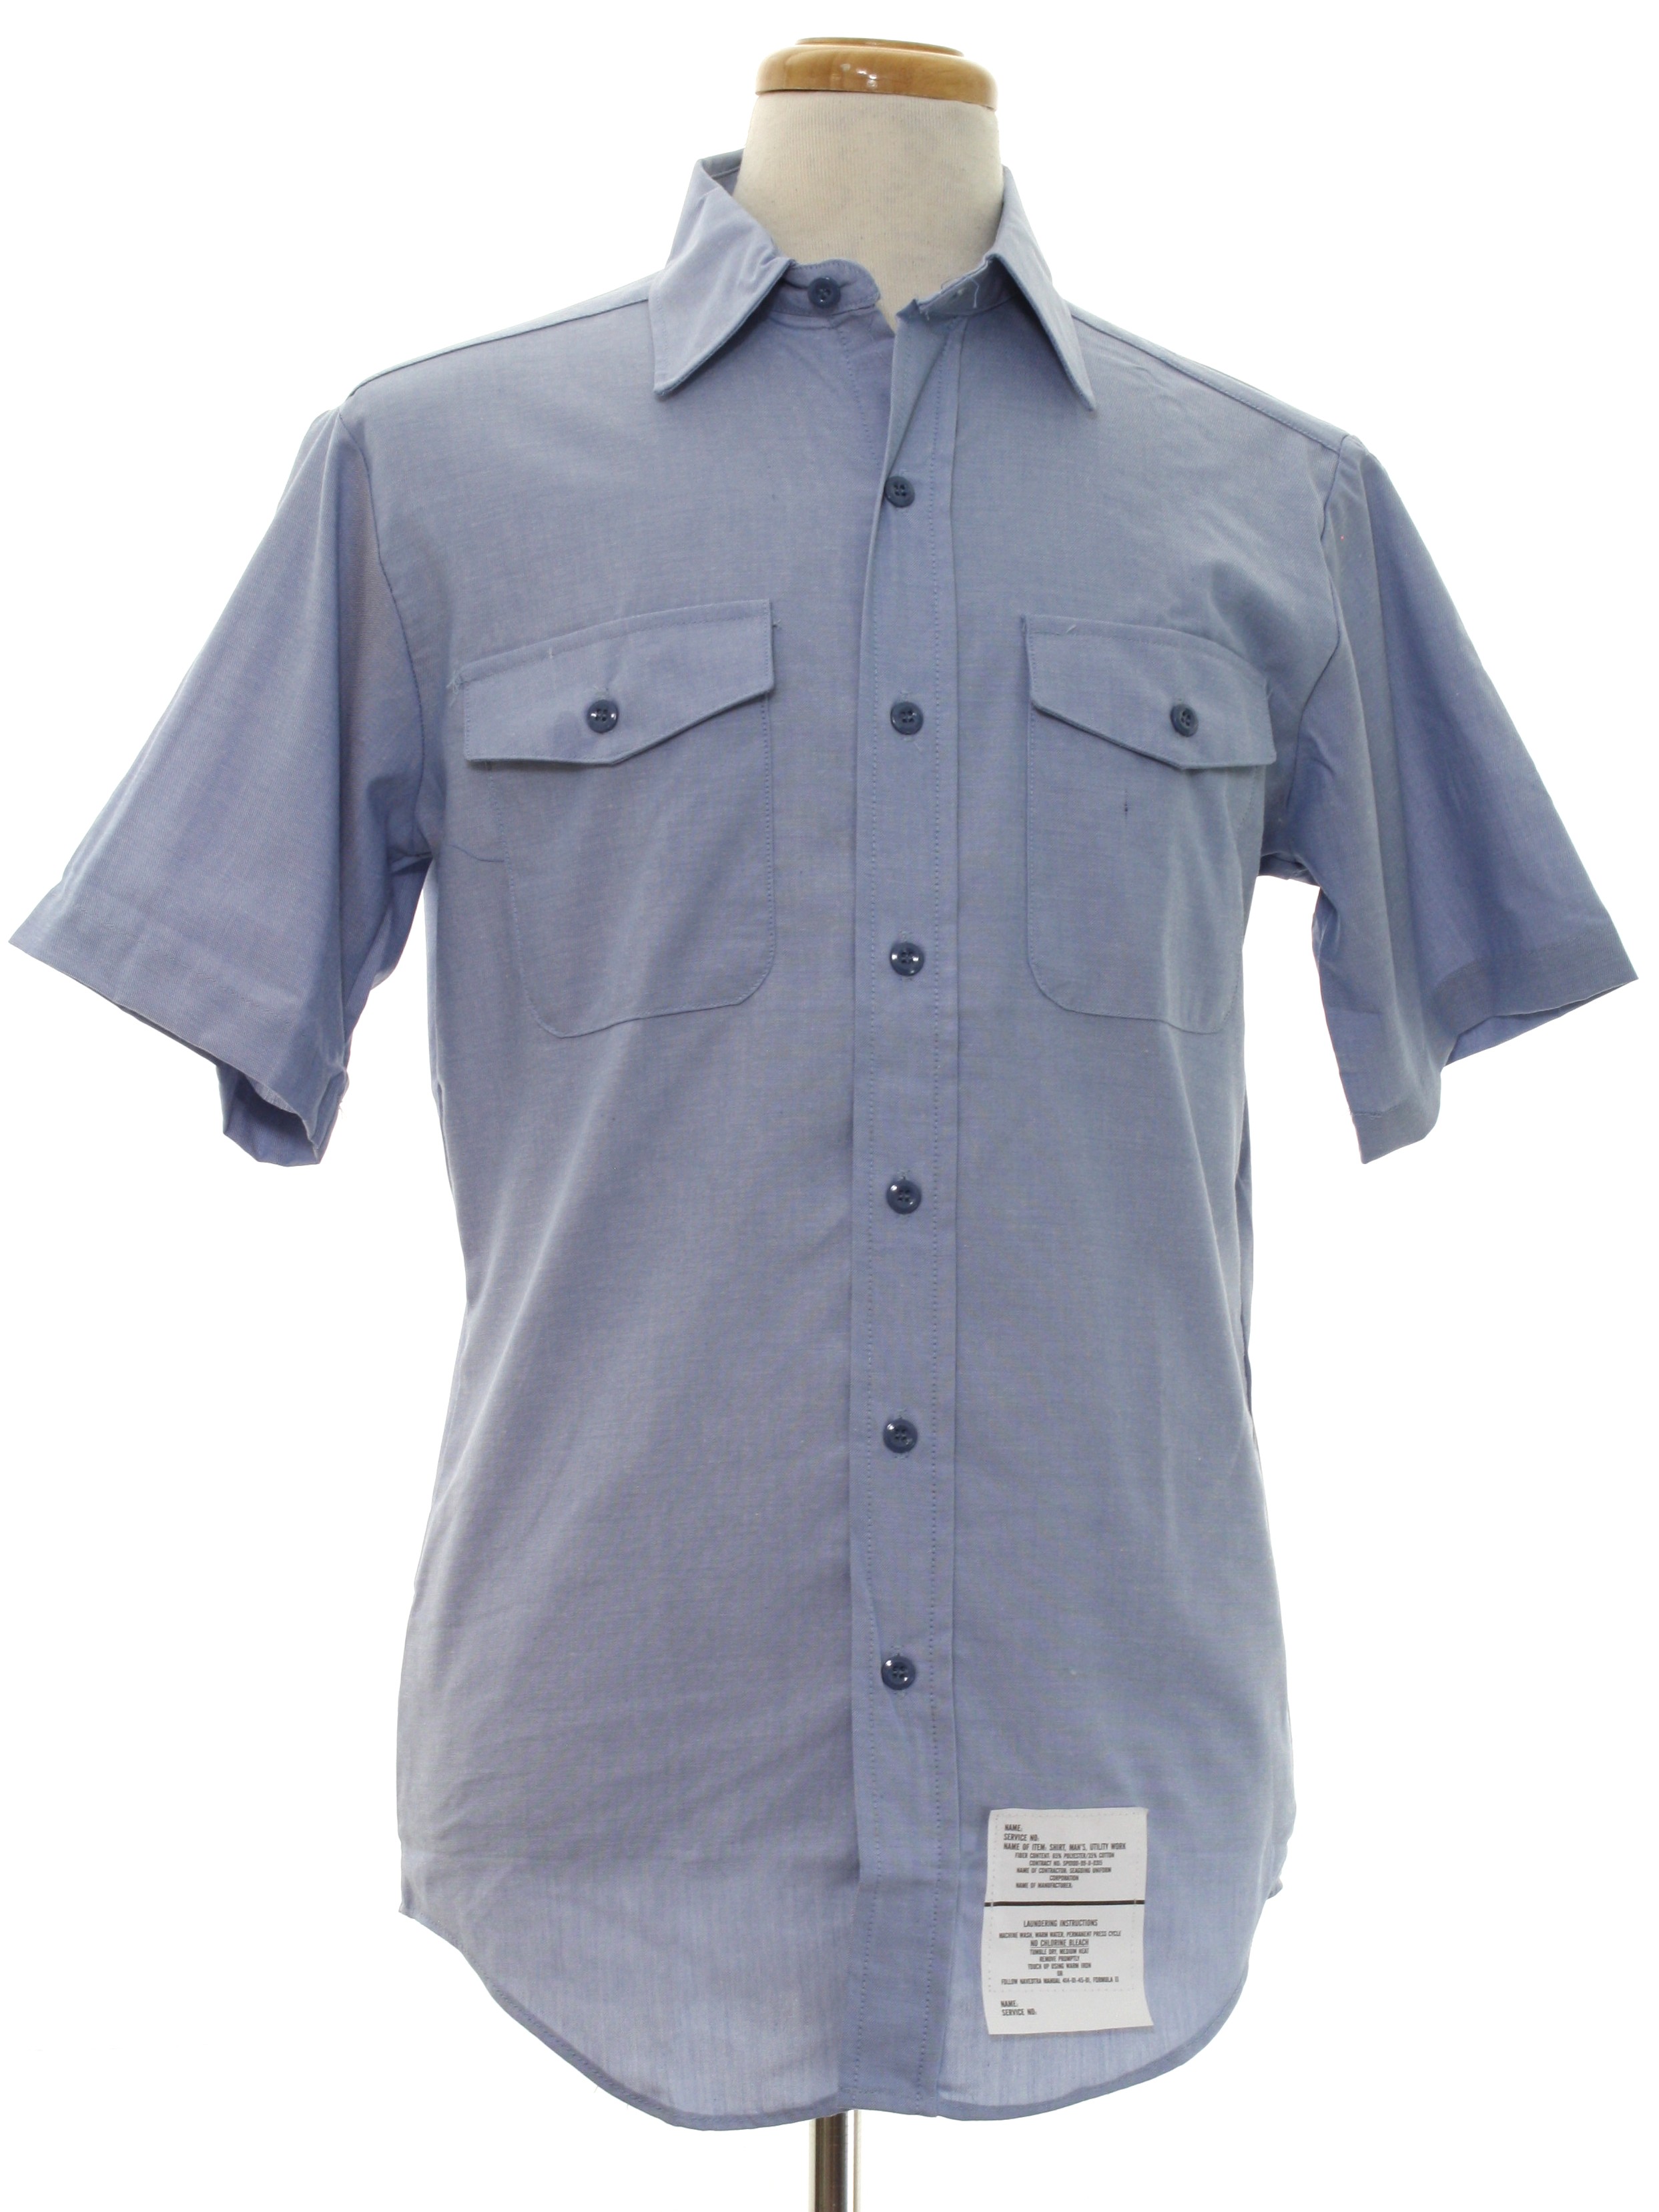 Retro 1980s Shirt: 80s -Seagoing Uniform Corp- Mens light blue ...